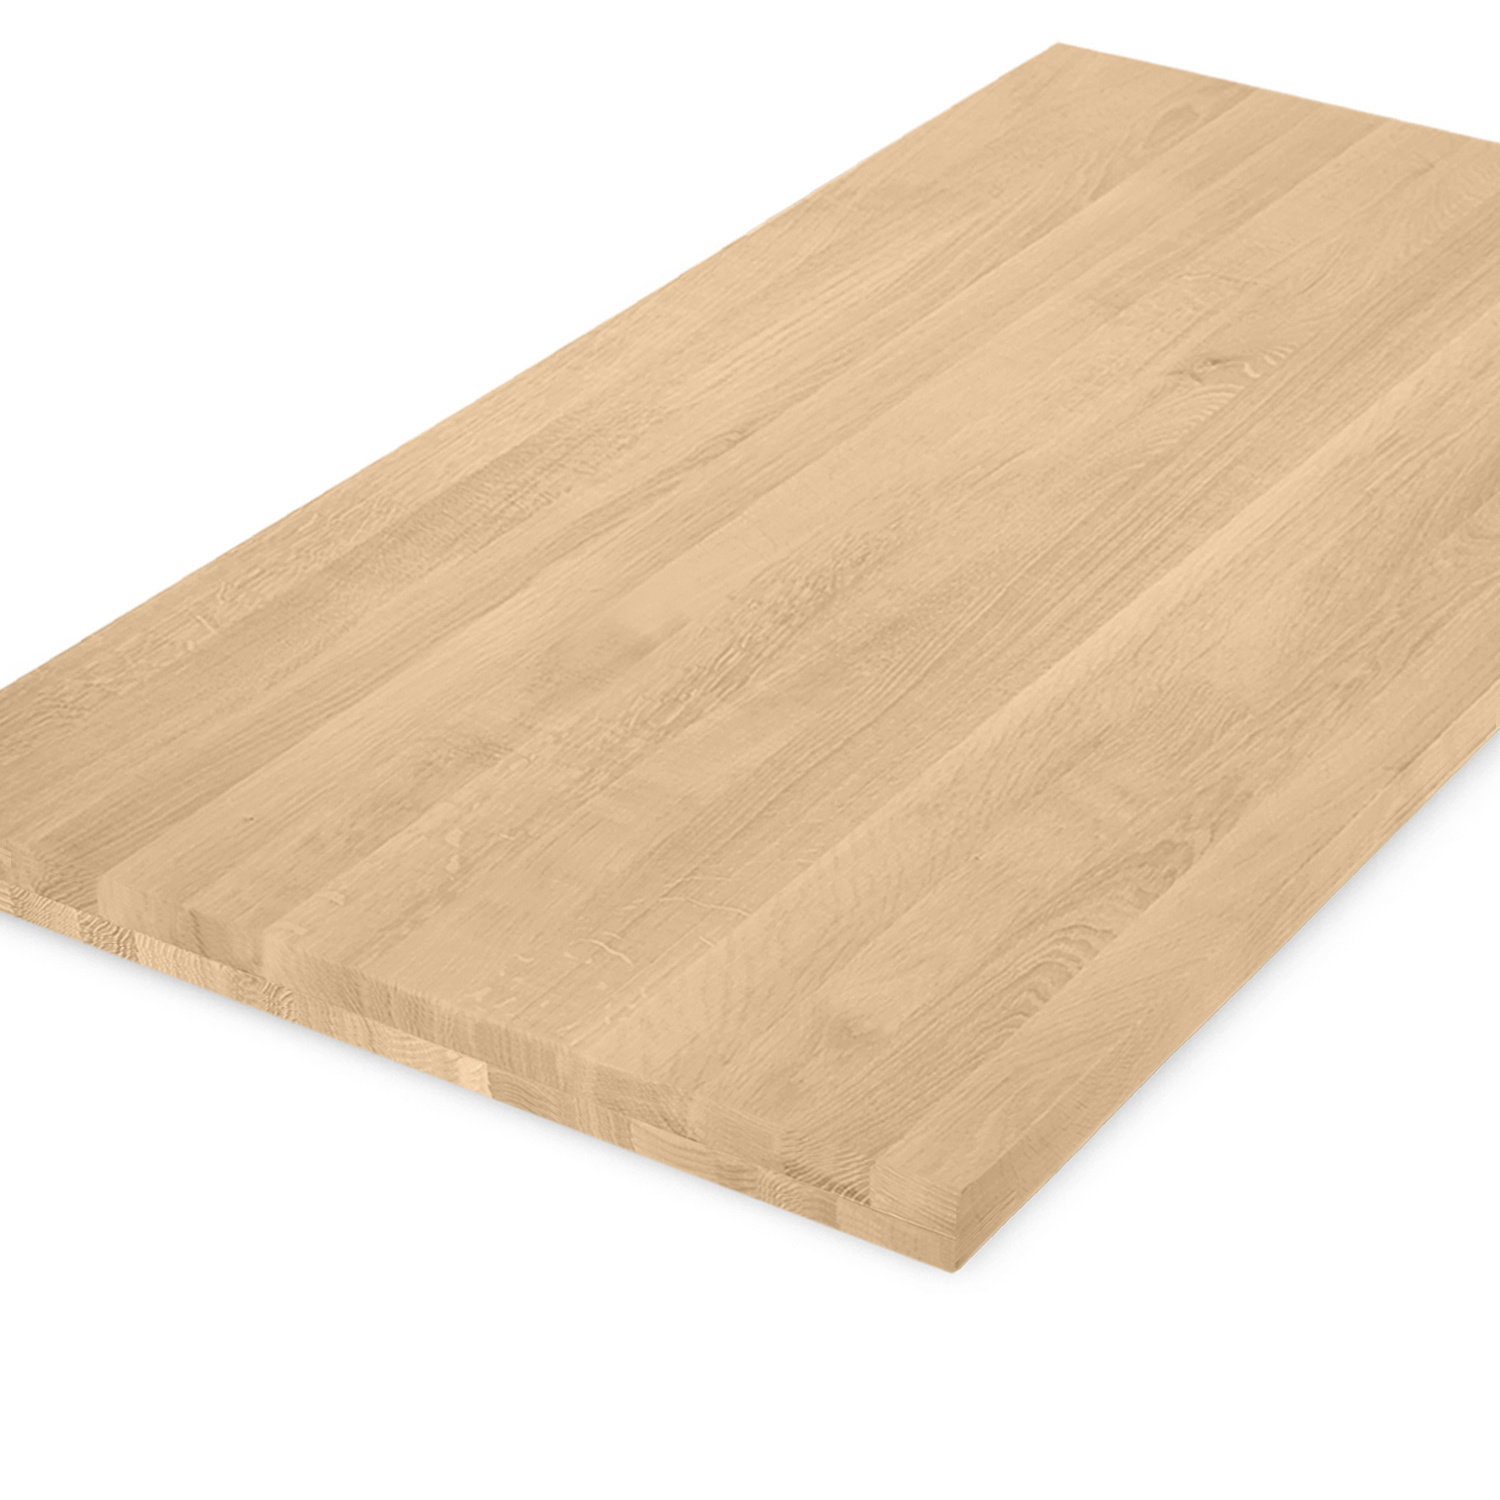  Tischplatte Eiche nach Maß - 4,6 cm dick (2-lagig) - Eichenholz A-Qualität - Eiche Tischplatte massiv - verleimt & künstlich getrocknet (HF 8-12%) - 50-120x50-350 cm